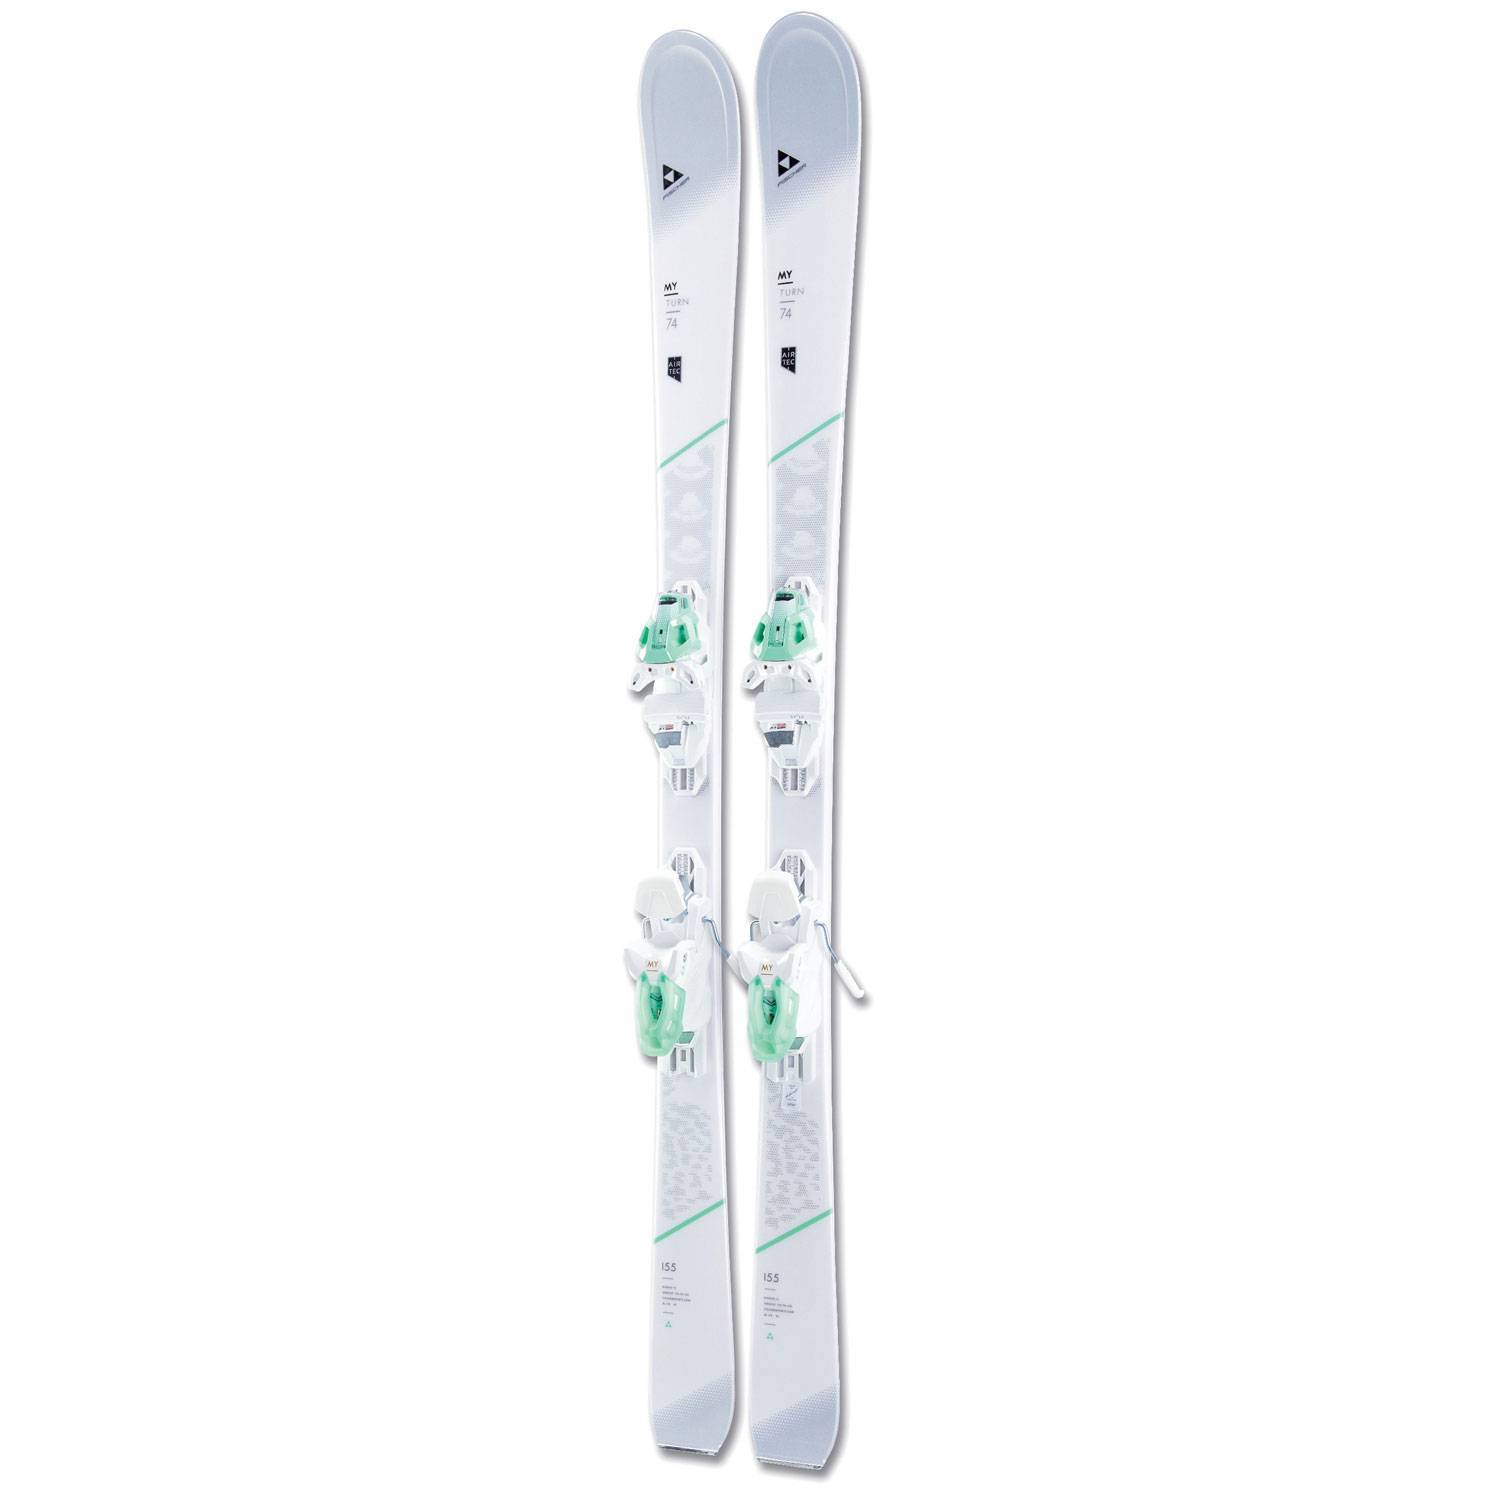 Ski set. Лыжи горные Fischer женские my turn. Fisher женские горные лыжи 2018/. MBS 10 Powerrail Brake 85. Лыжи белые с креплениями Фишер.